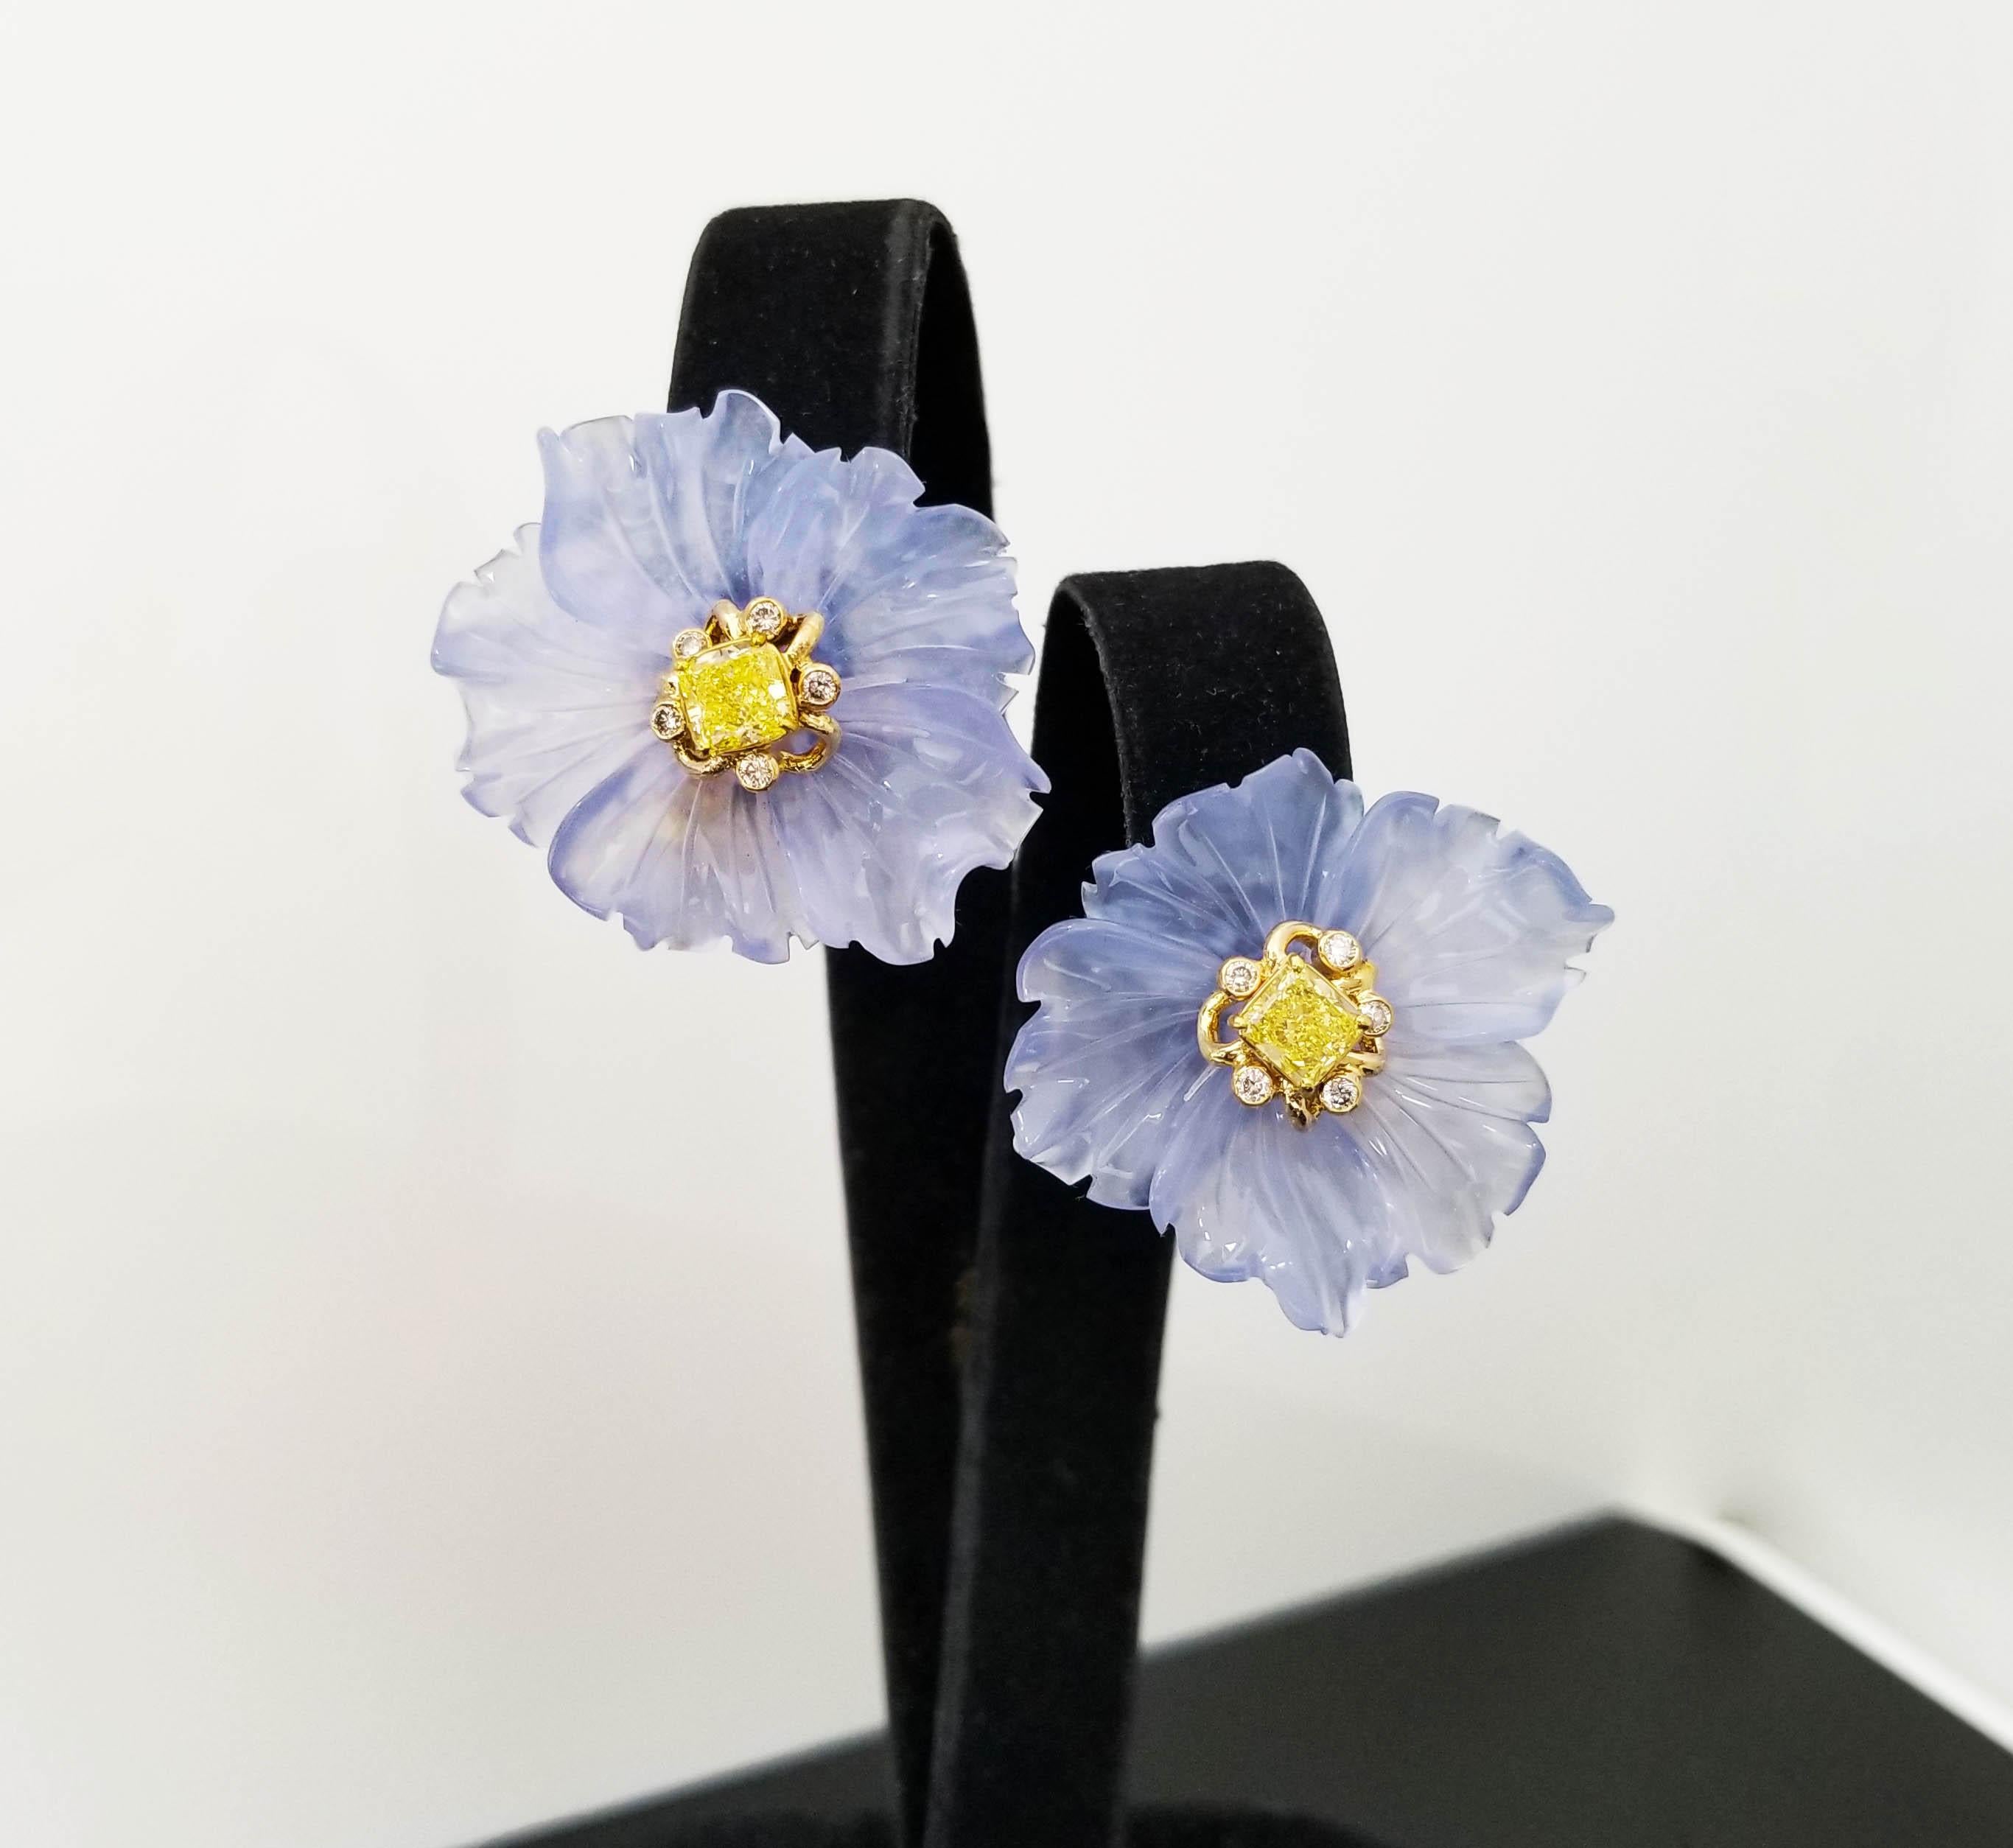 
SCARSELLI x Rebecca Koven Floral inspirierte Ohrclips mit GIA-zertifizierten intensiven gelben Fancy-Diamanten. Diese Ohrringe, eine Collaboration zwischen Scarselli und der Schmuckdesignerin Rebecca Koven, wurden aus 18 Karat Gelbgold, 1,44 Karat